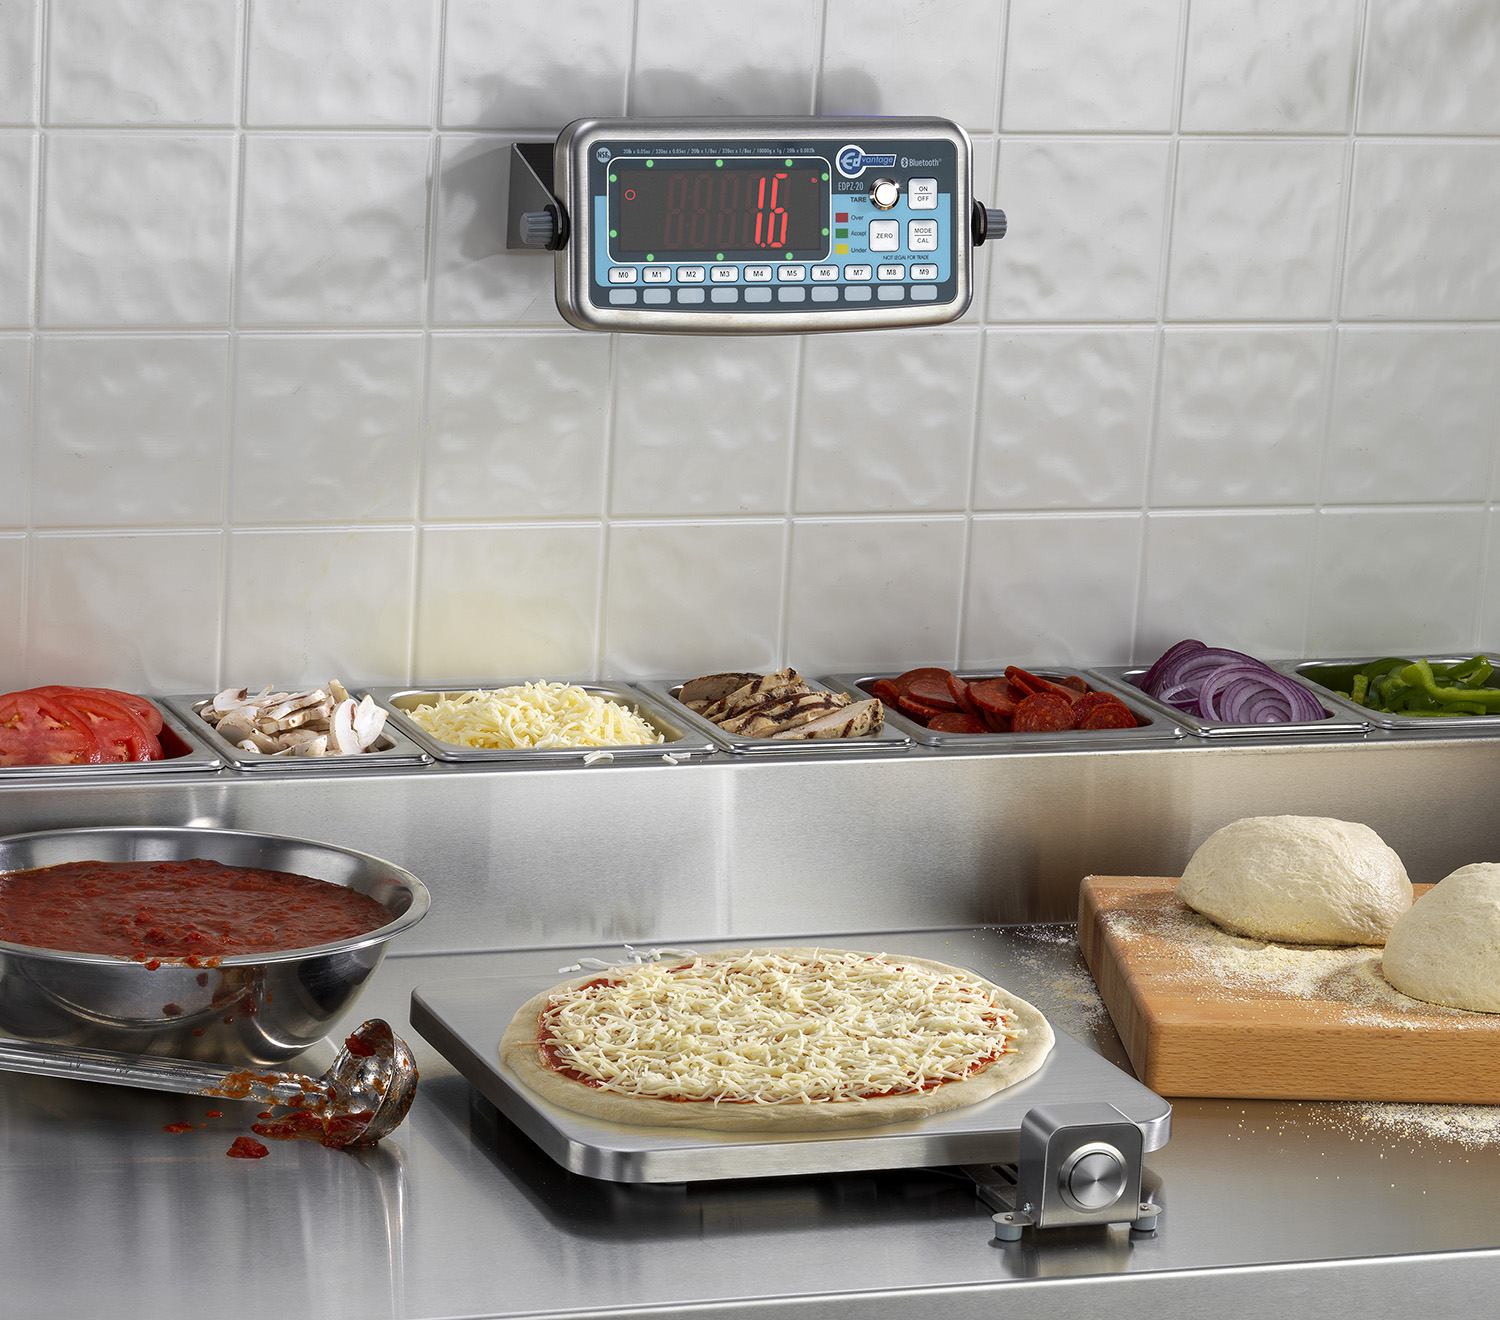 NEW! EDPZ-20 Bluetooth® Wireless Digital Pizza/Speciality Scale